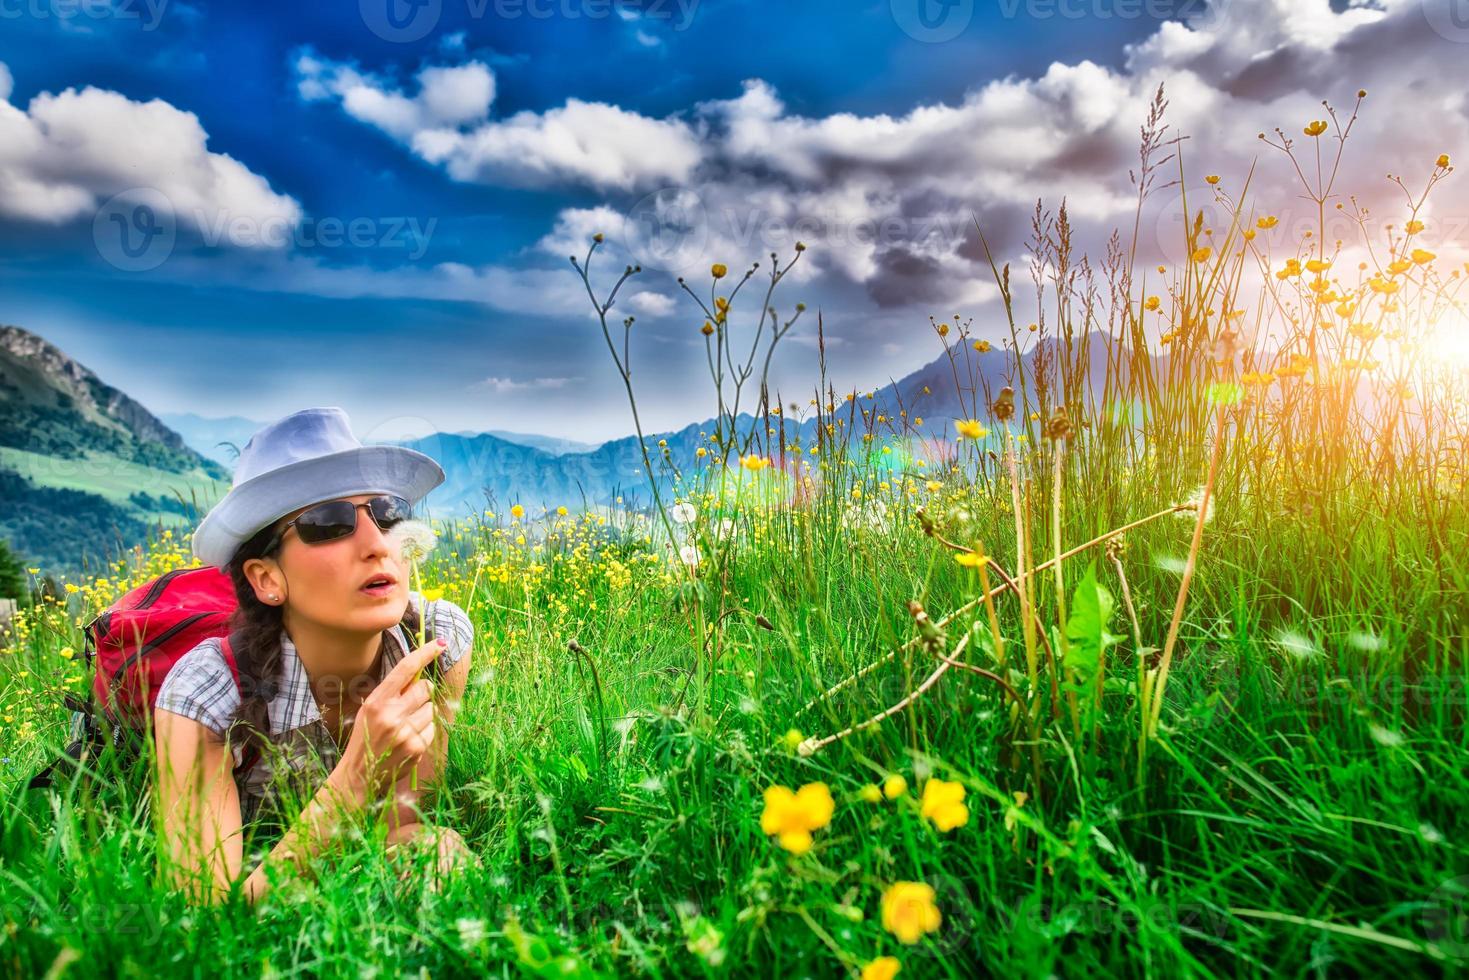 garota no prado da montanha soprando flores foto